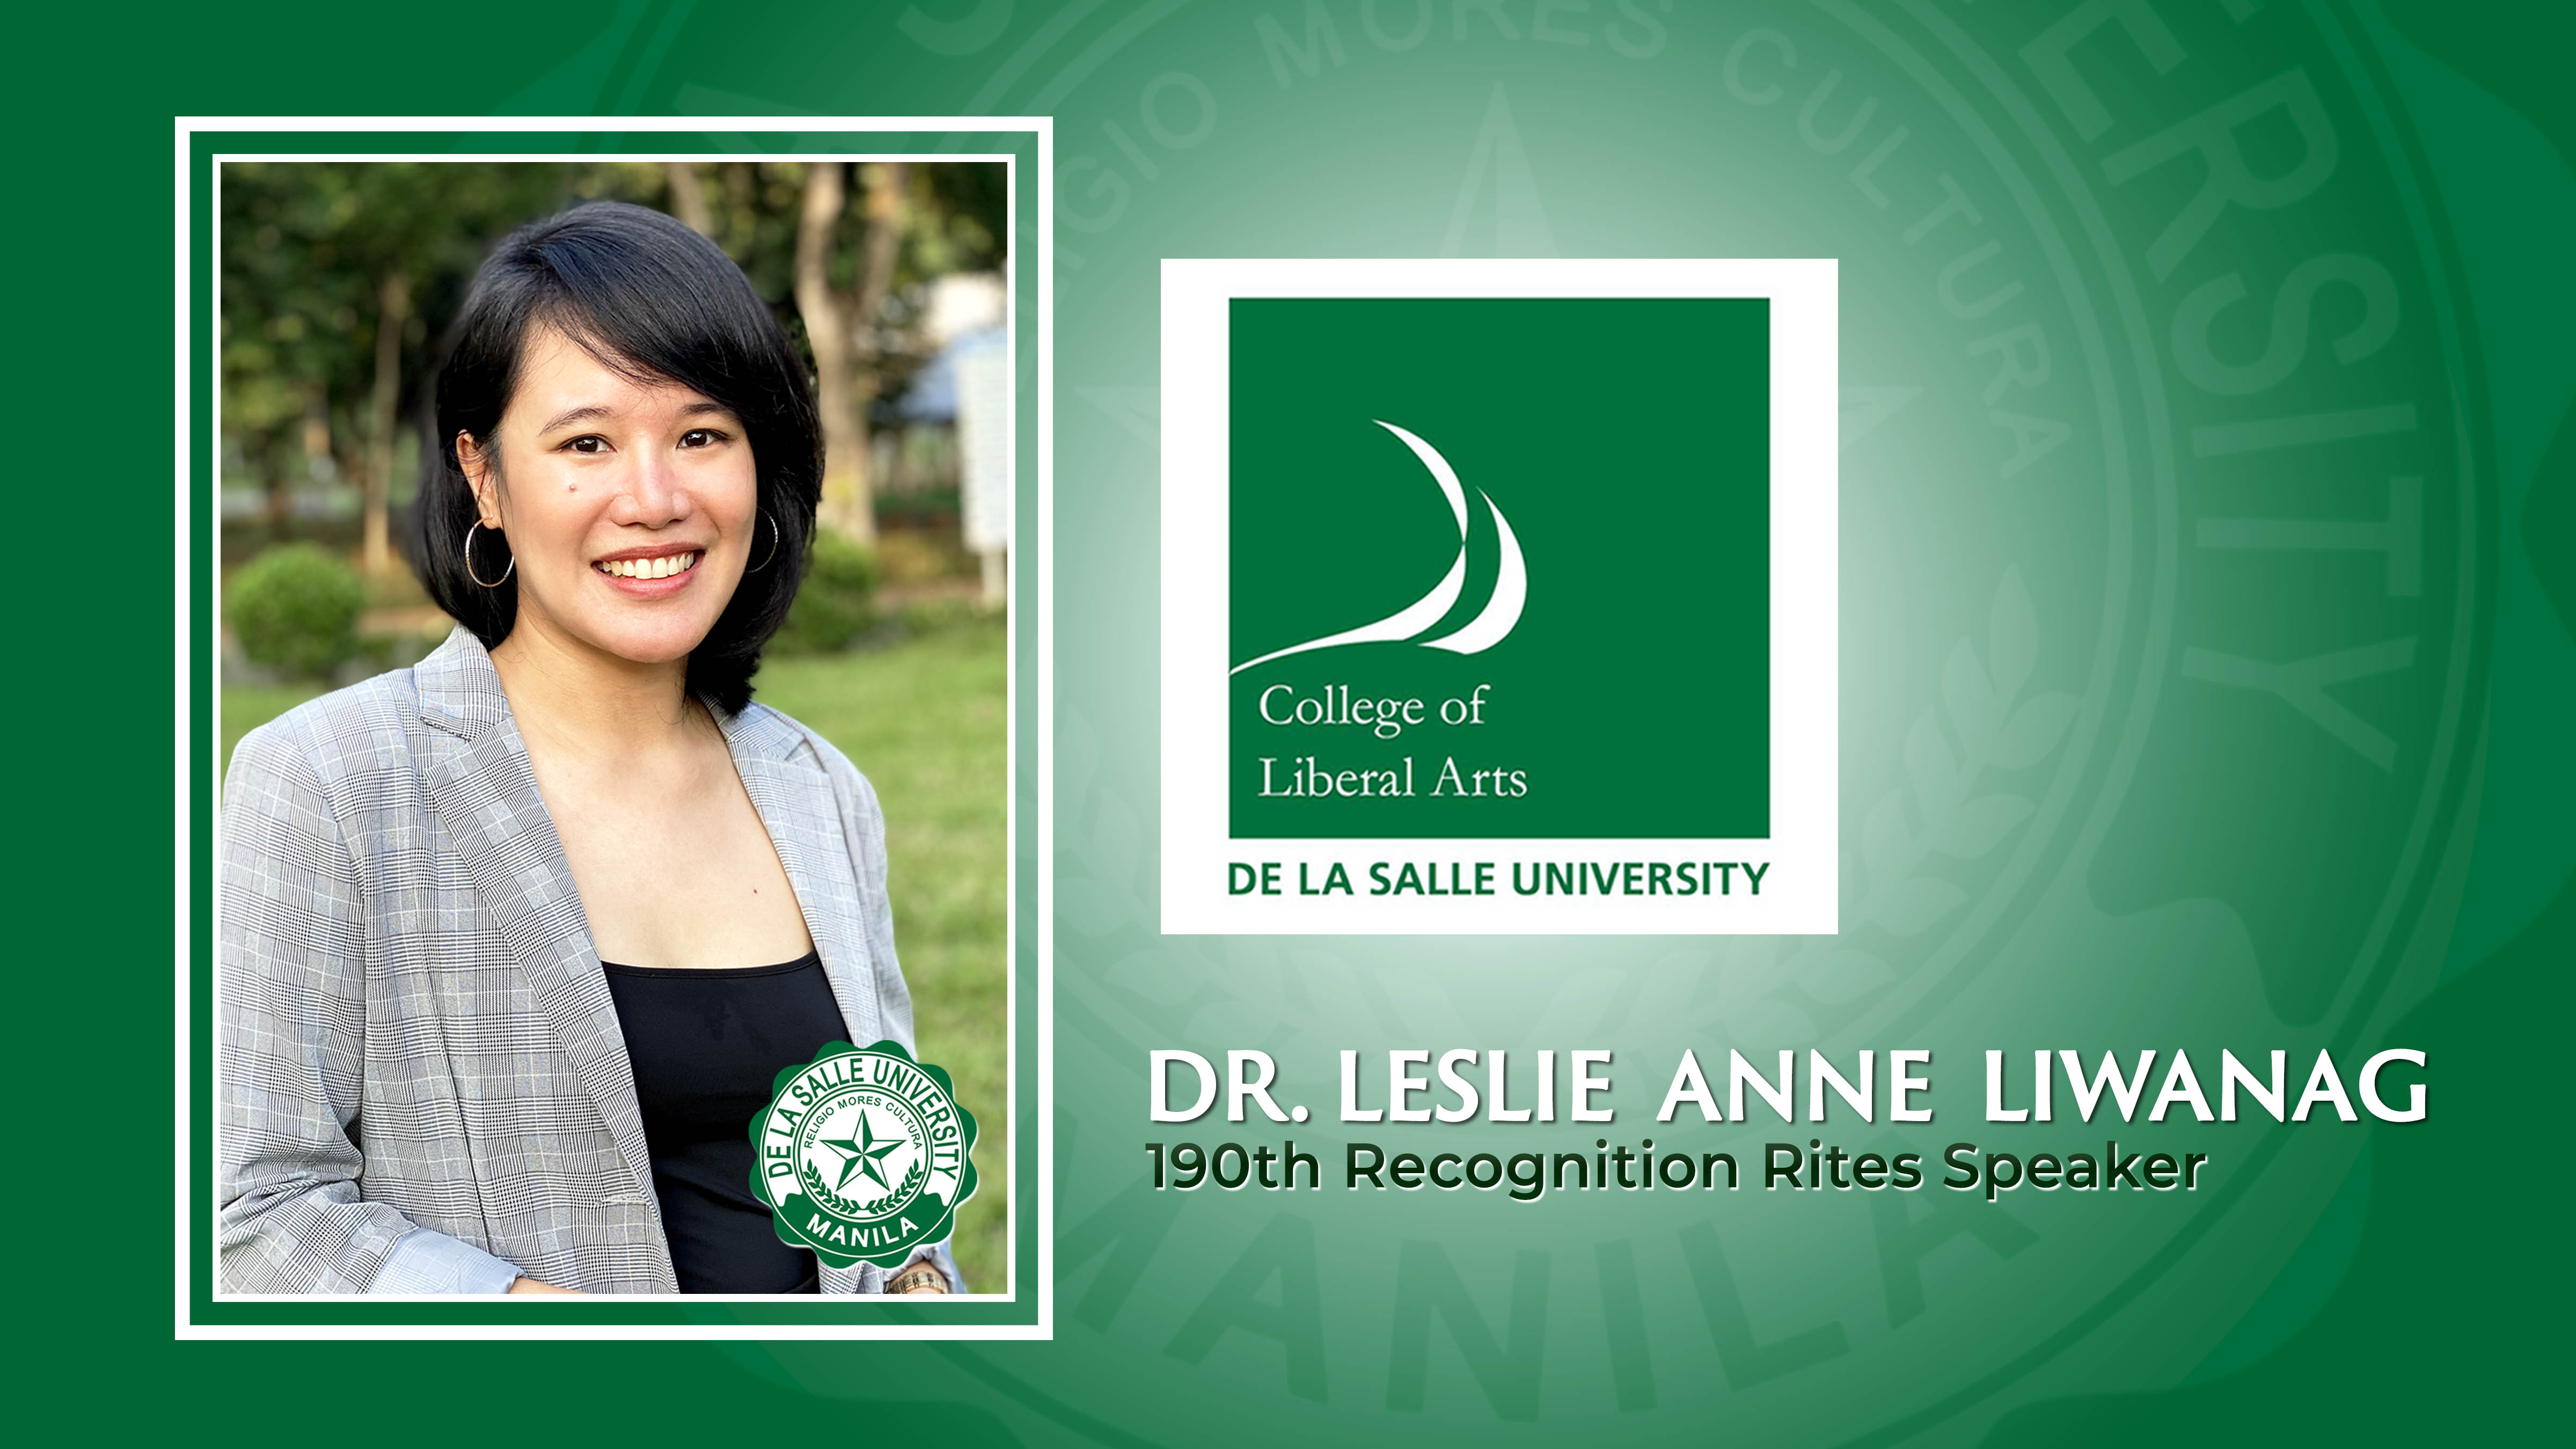 Dr. Leslie Anne Liwanag